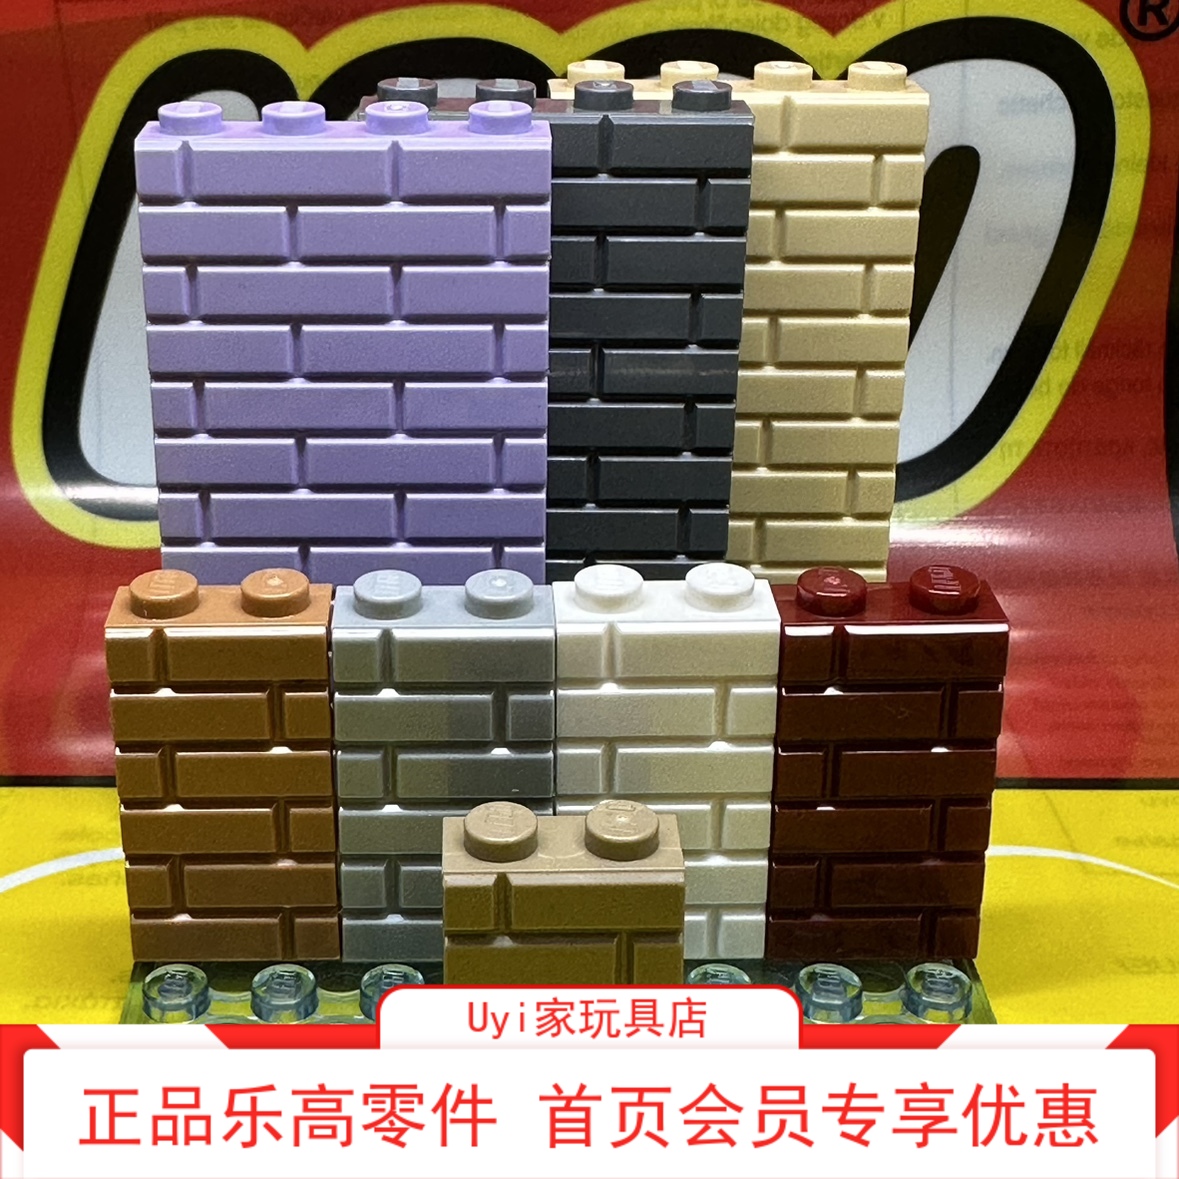 乐高LEGO 零件 1x2 墙纹砖墙砖 98283 15533浅灰深灰白深红中肉米